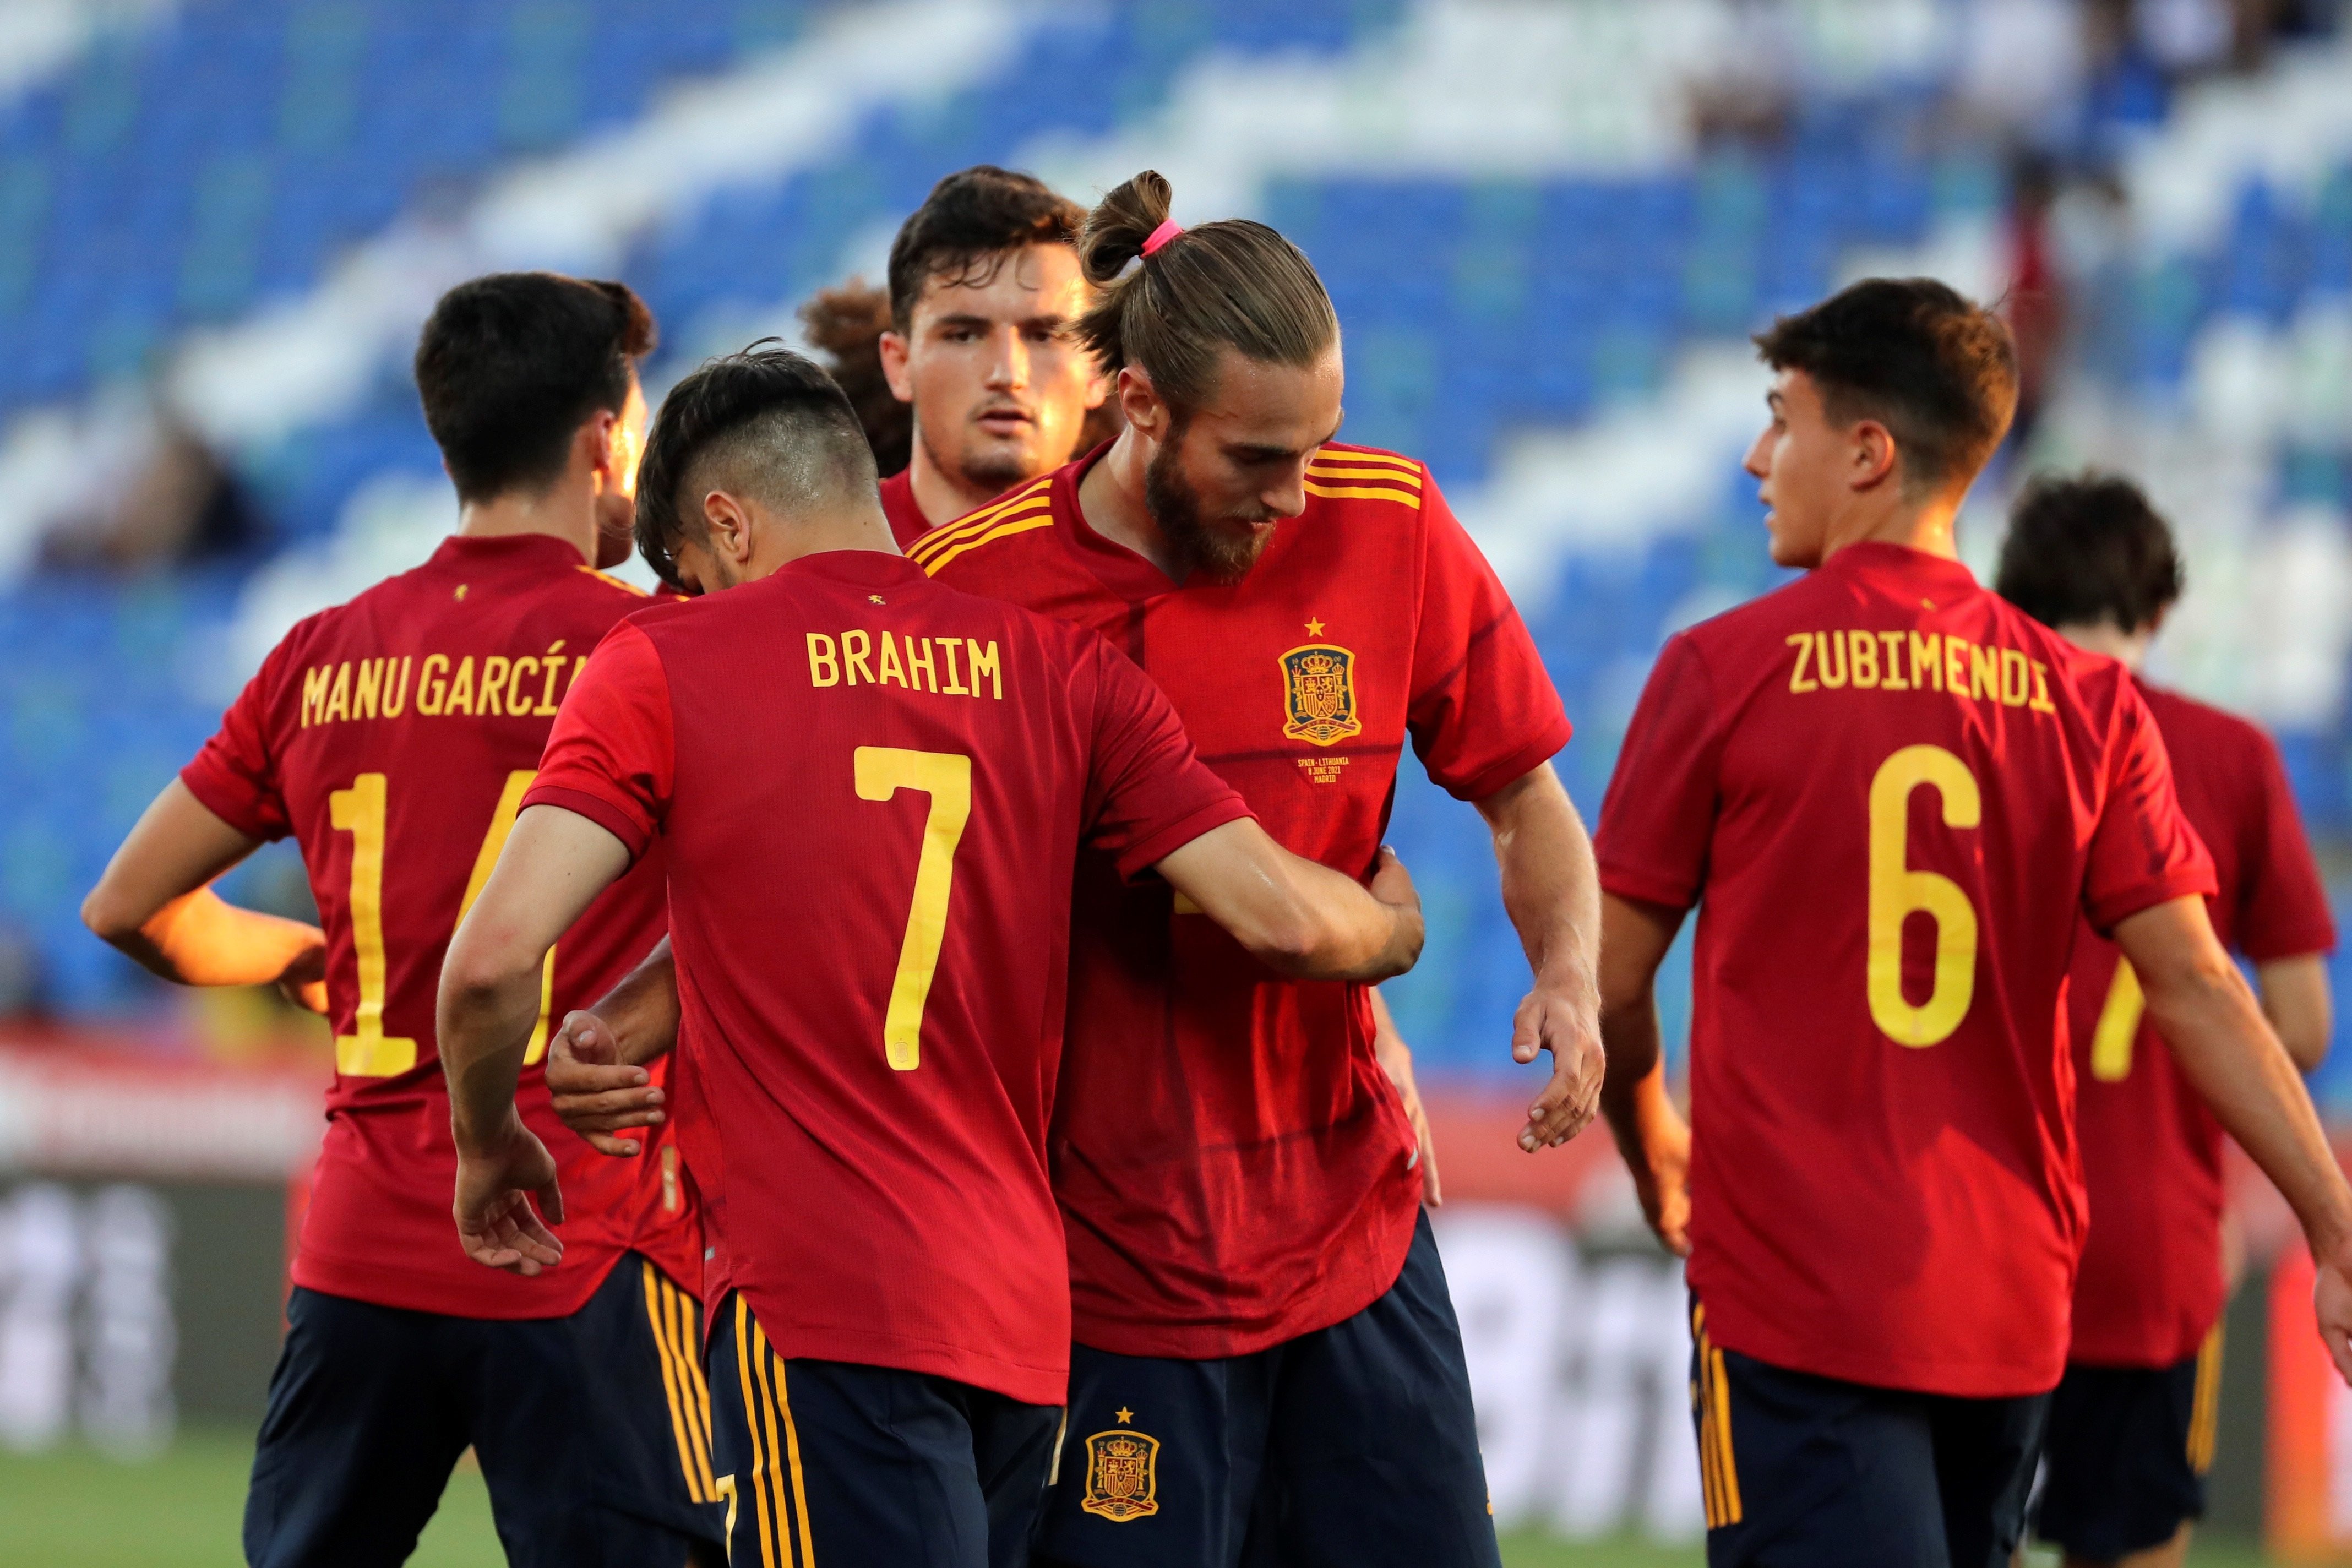 La selecció espanyola més jove i amb més futur supera Lituània (4-0)